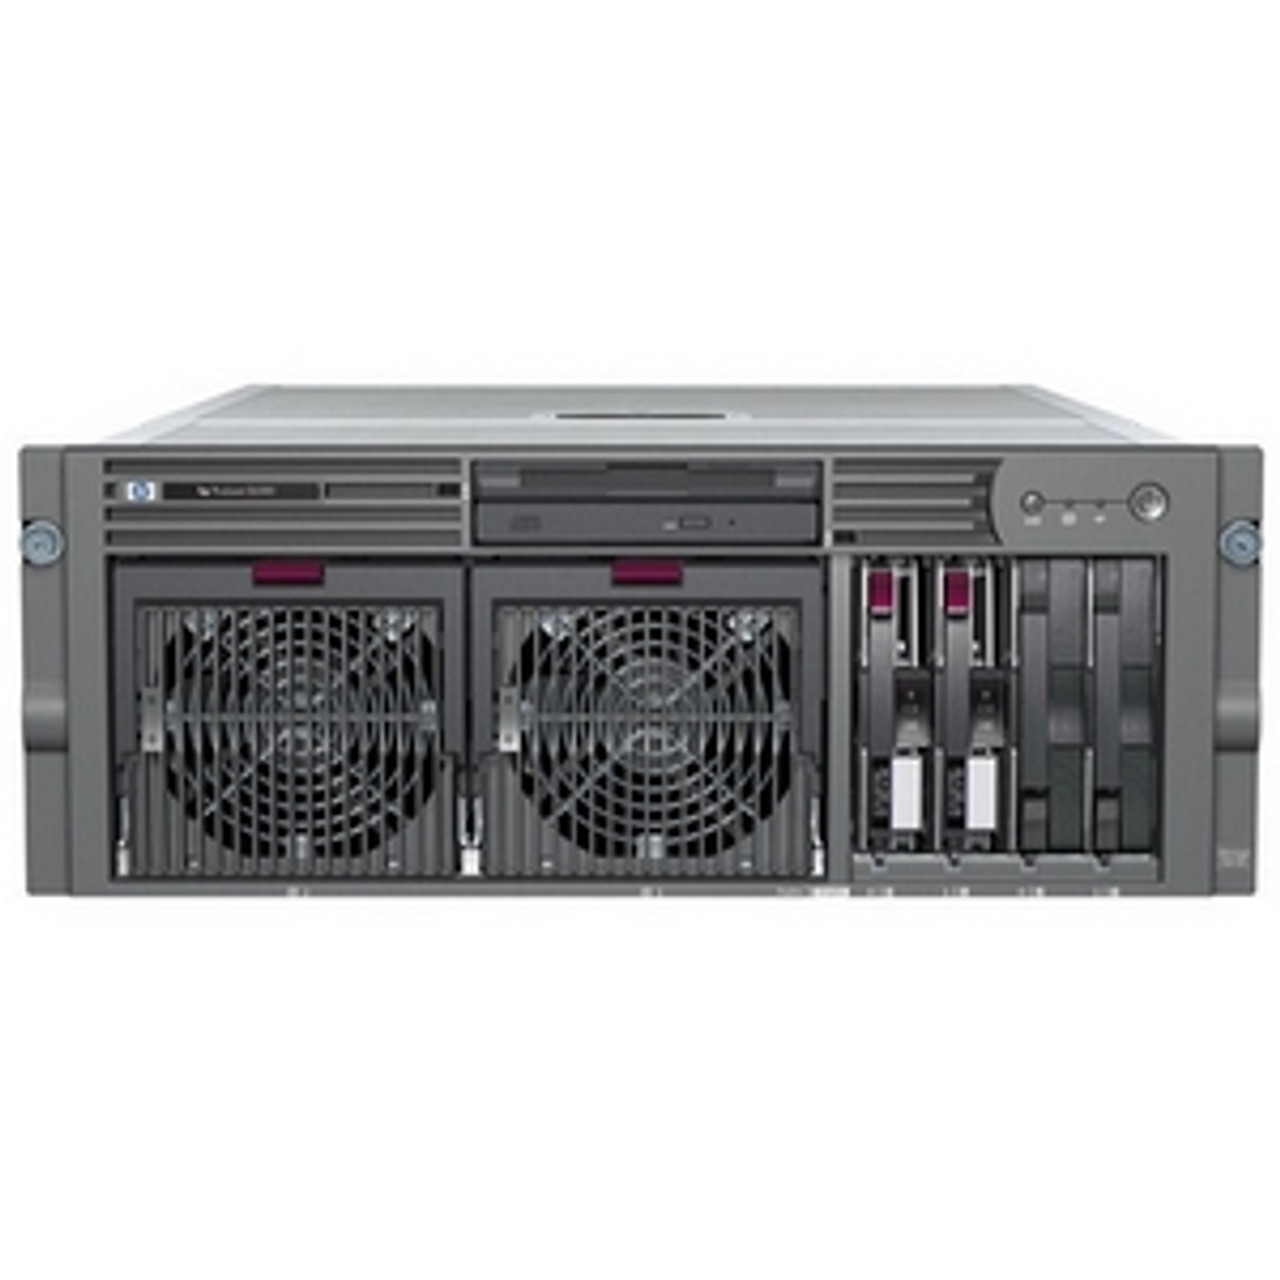 AE454A - HP ProLiant DL585 Network Storage Server 2 x AMD Opteron 2.2GHz 72.8TB SCSI